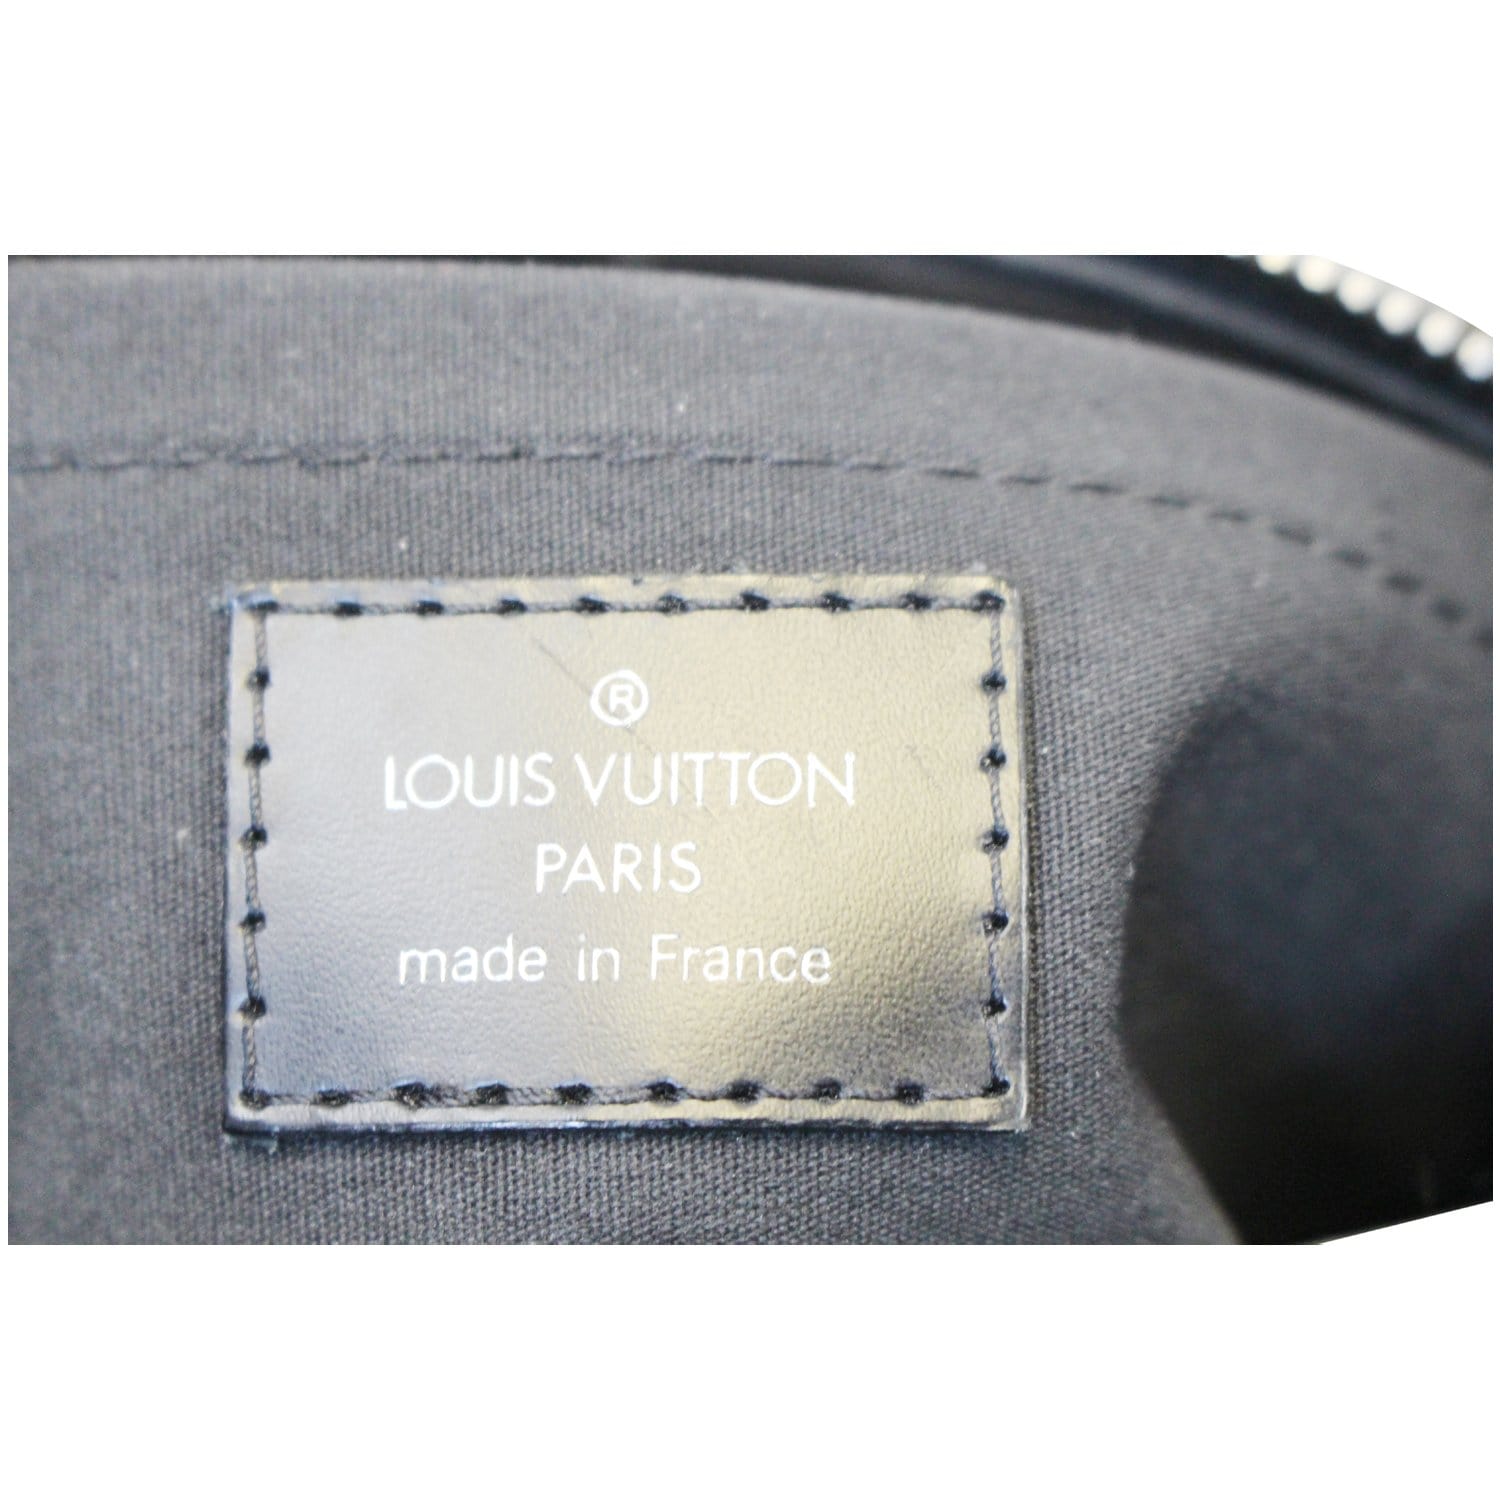 UhfmrShops  1A3CW4 - Louis Vuitton Epi Turenne PM Shoulder Bag Camel  M59281 'Black Gold' - LOUIS VUITTON LV 1854 GRAPHIC KNIT T-SHIRT